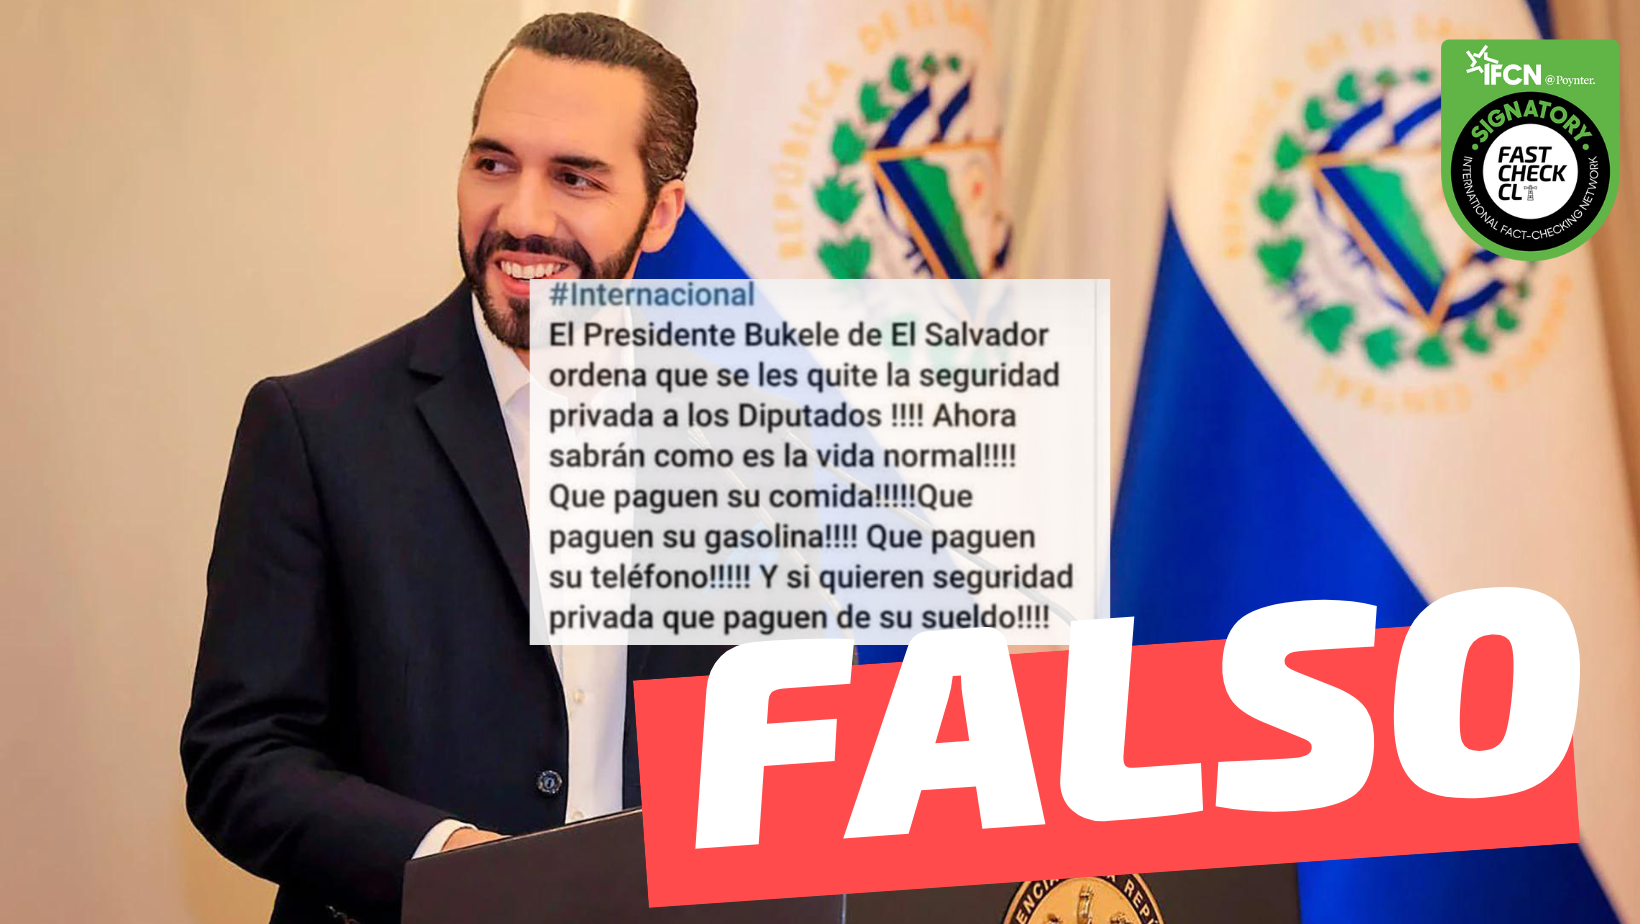 You are currently viewing “El Presidente Bukele de El Salvador ordena que se les quite la seguridad privada a los diputados”: #Falso